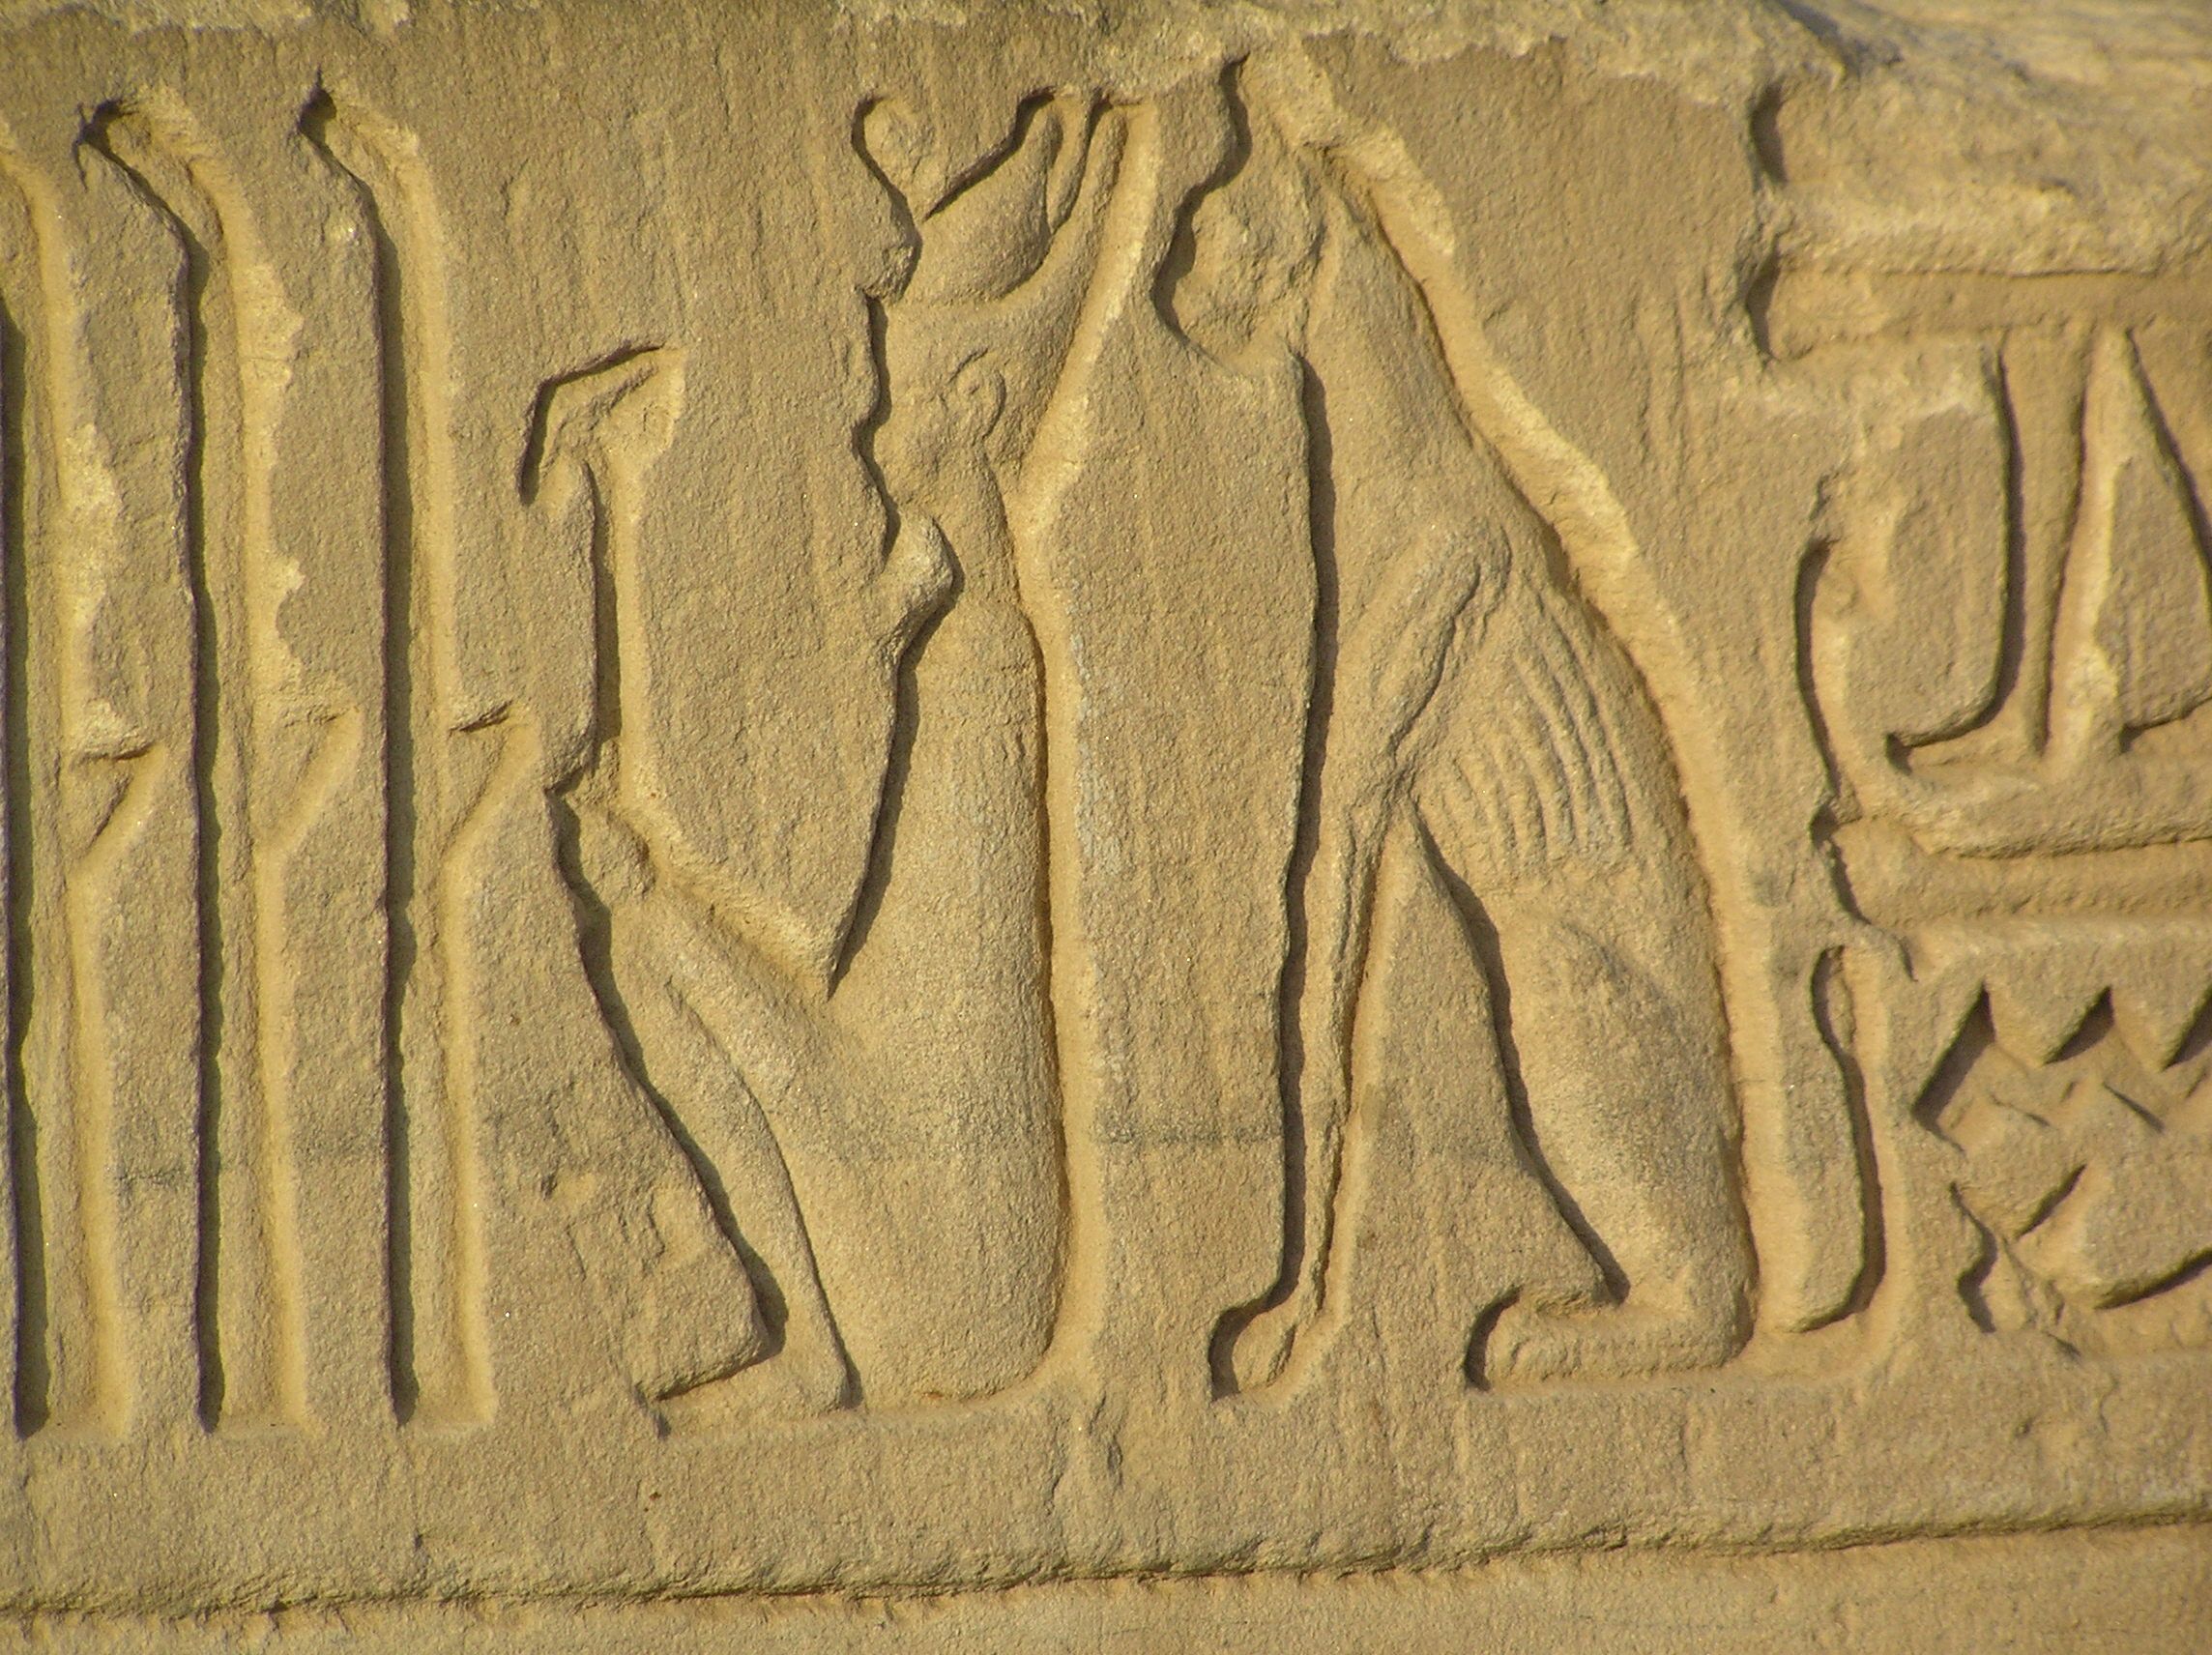 Kom Ombo Temple Egypt - 4-25-07 - Cat hieroglyph | Egypt, Ancient egypt,  Egypt art